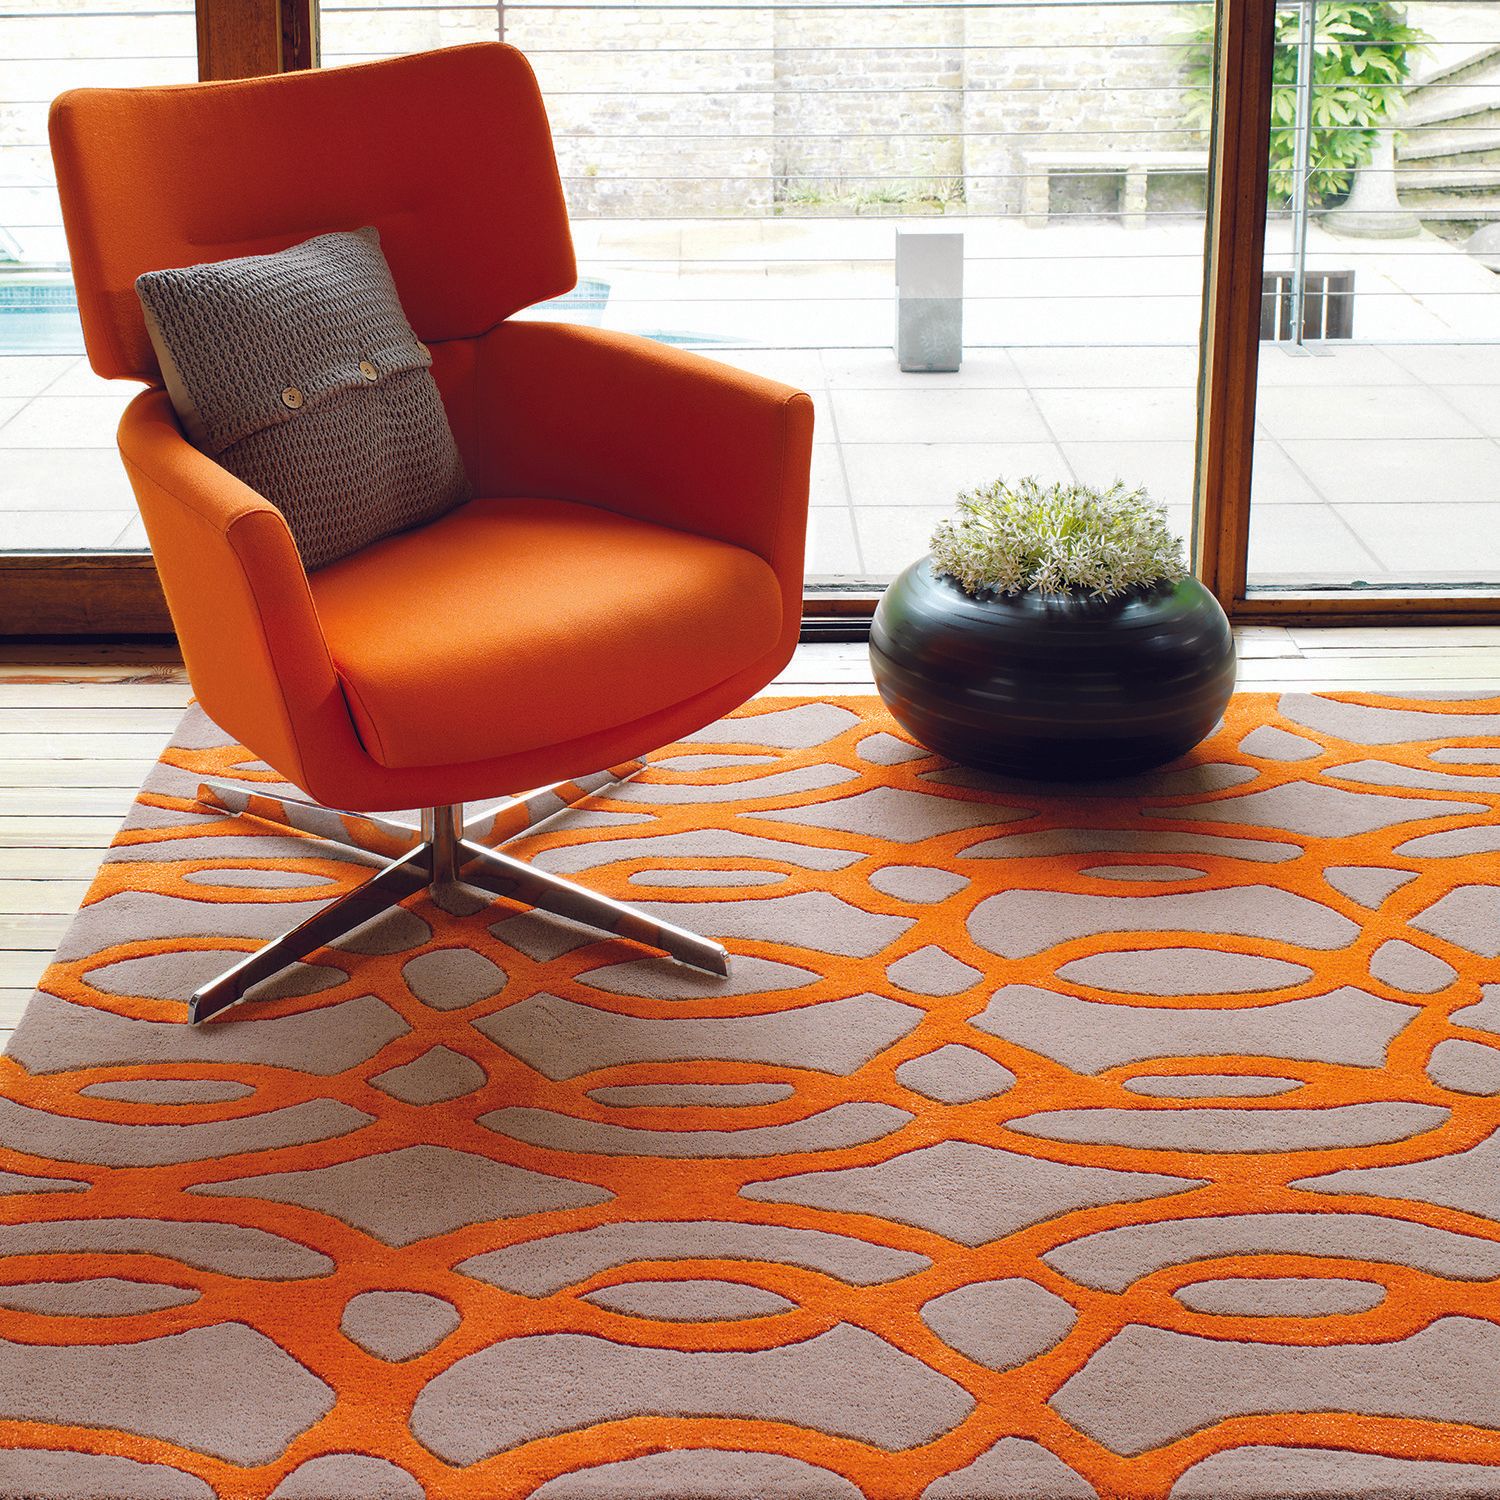 decorated orange carpet